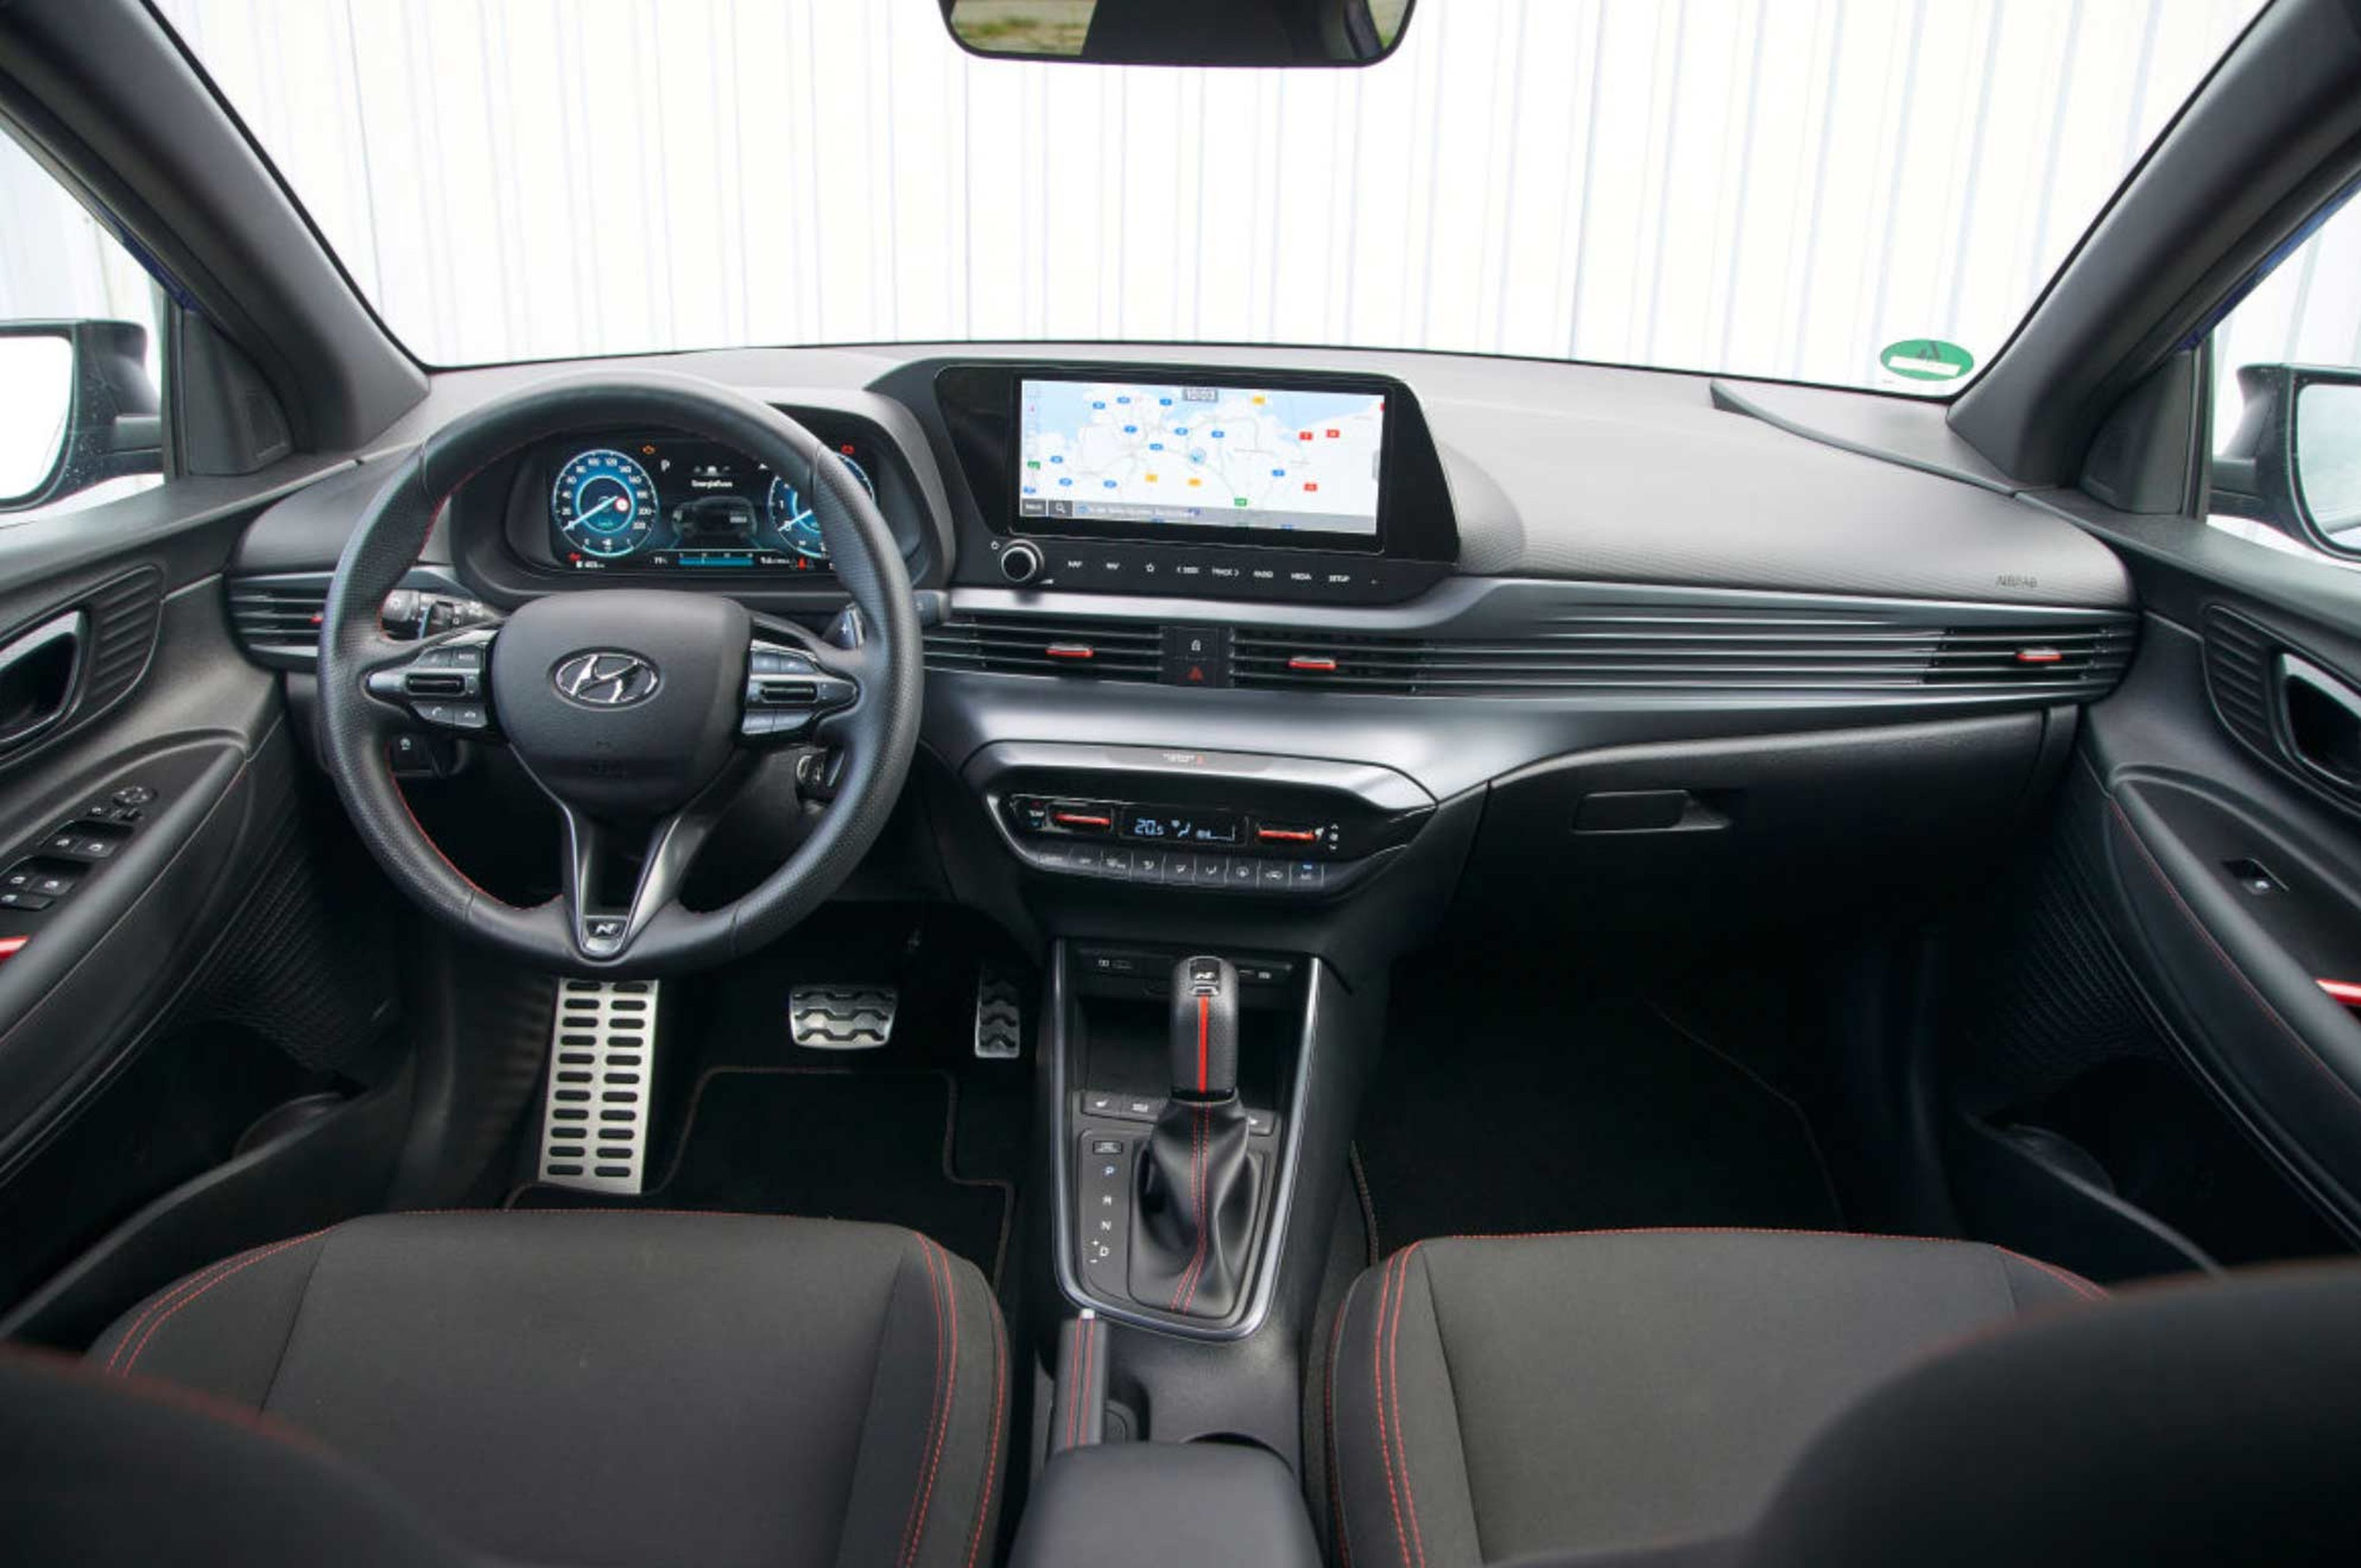 Comparativa del Honda Jazz y el Hyundai i20 cockpit i20